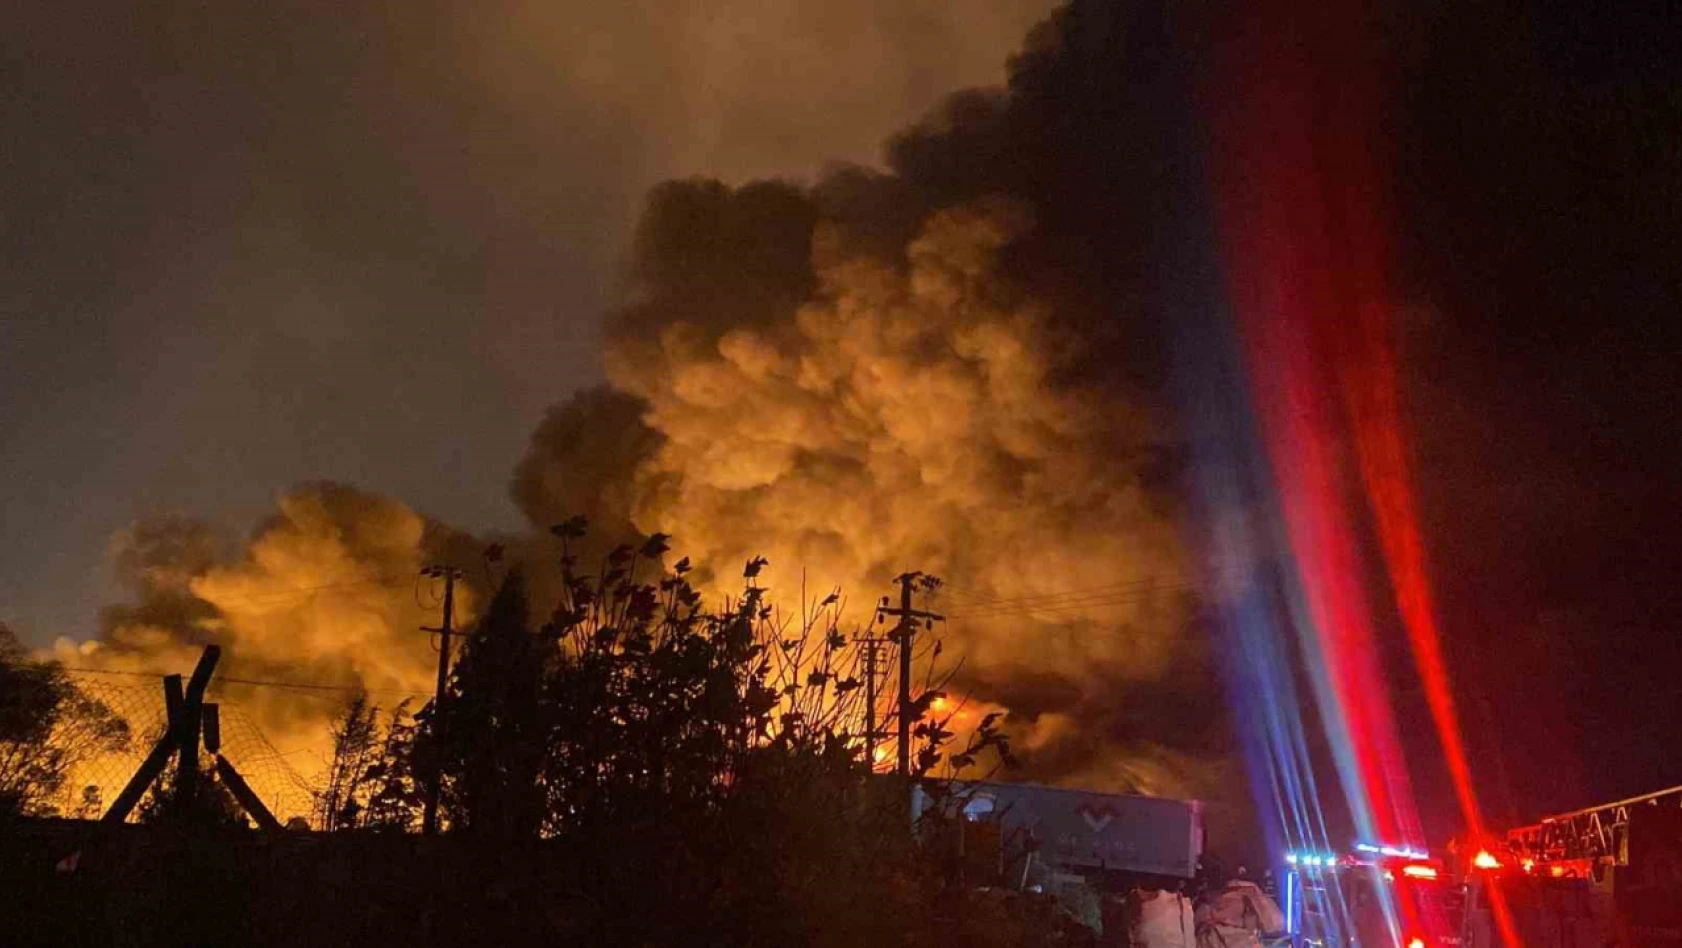 Kocaeli'nin Gebze ilçesinde bir palet fabrikasında yangın çıktı. Olay yerine çok sayıda itfaiye ekibi sevk edilirken yangına müdahale sürüyor.